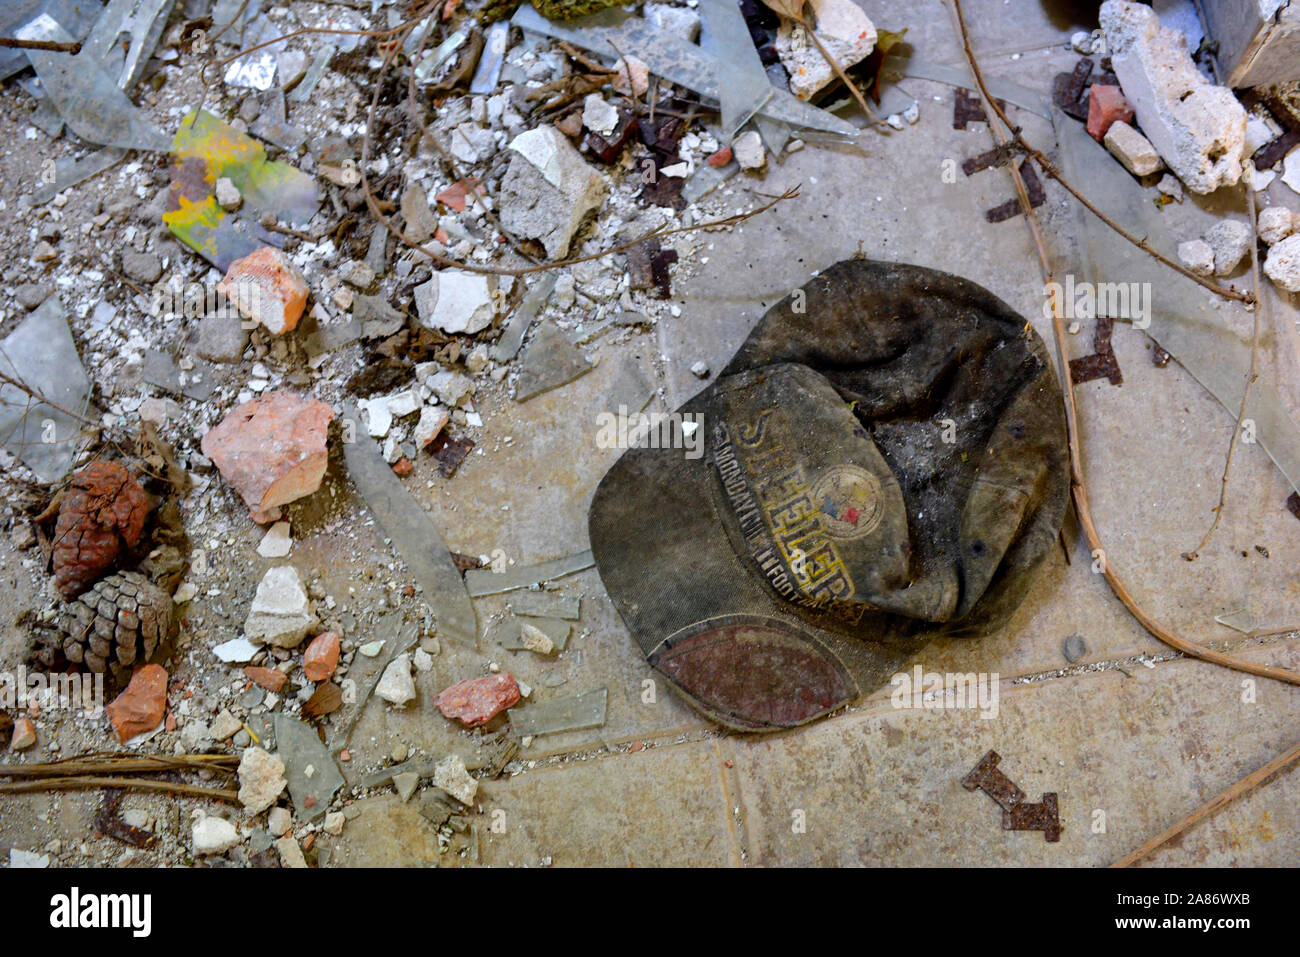 Escombros en el piso del edificio abandonado con viejos desechados Pittsburgh Steelers (fútbol) alcanzó un máximo gorra de béisbol Foto de stock